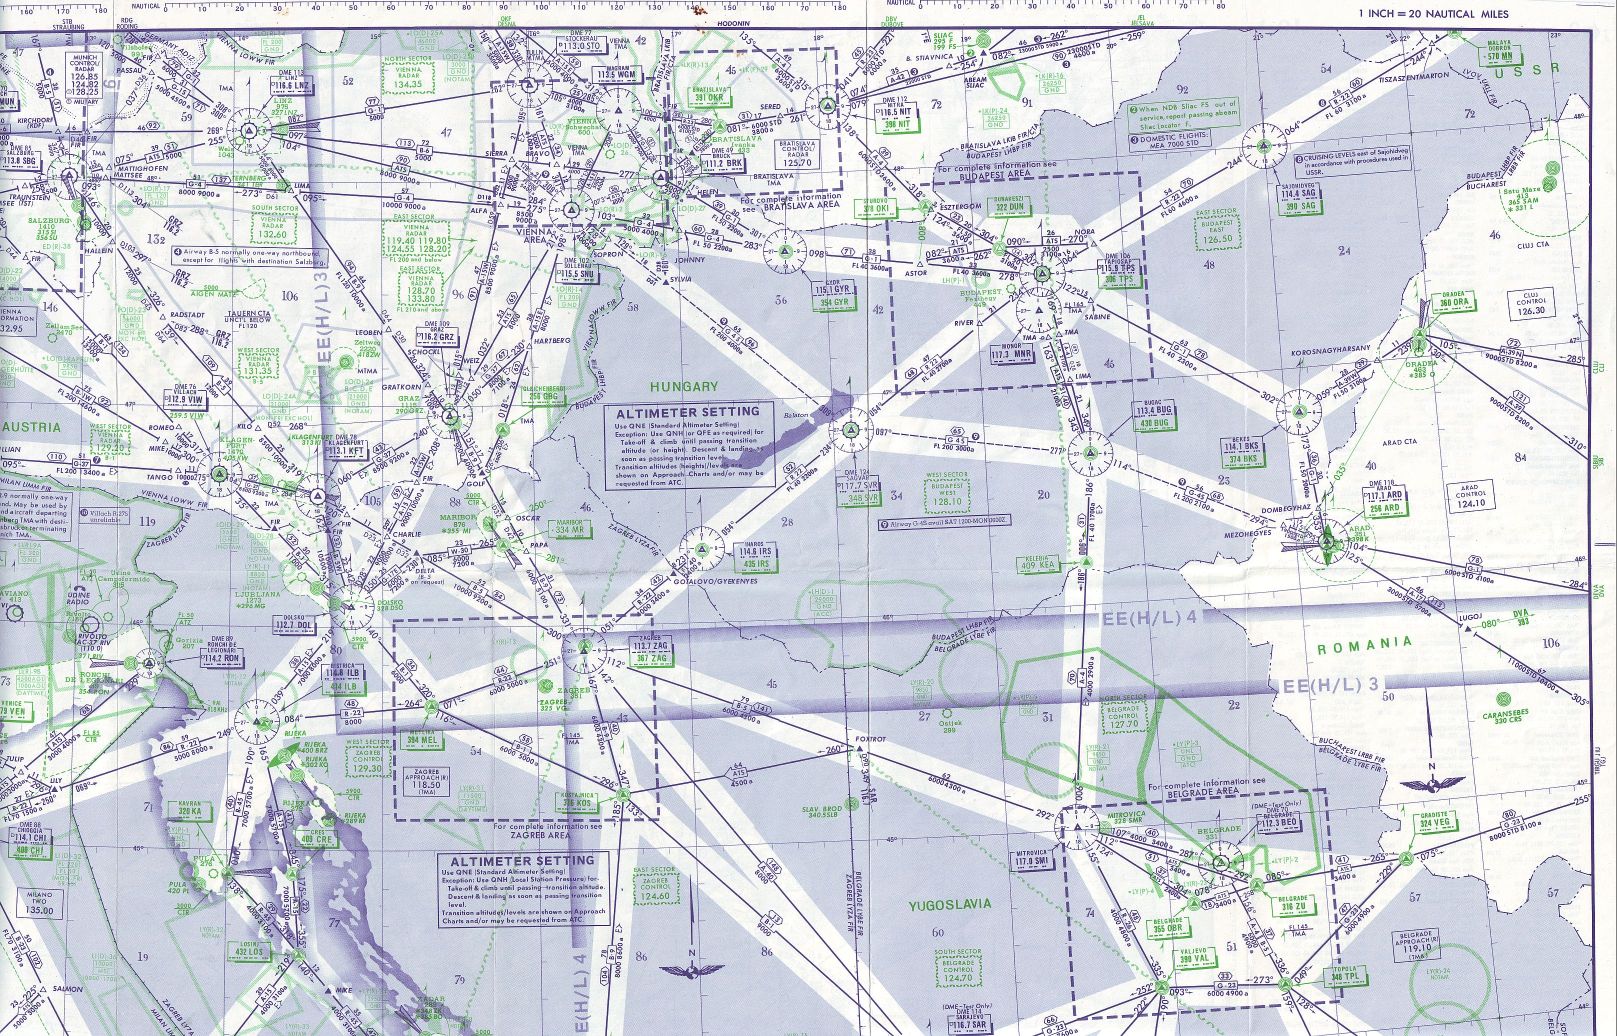 magyarország légifolyosói térkép IHO   Blog   A Pajtás, és a titkos térkép a függöny mögött magyarország légifolyosói térkép